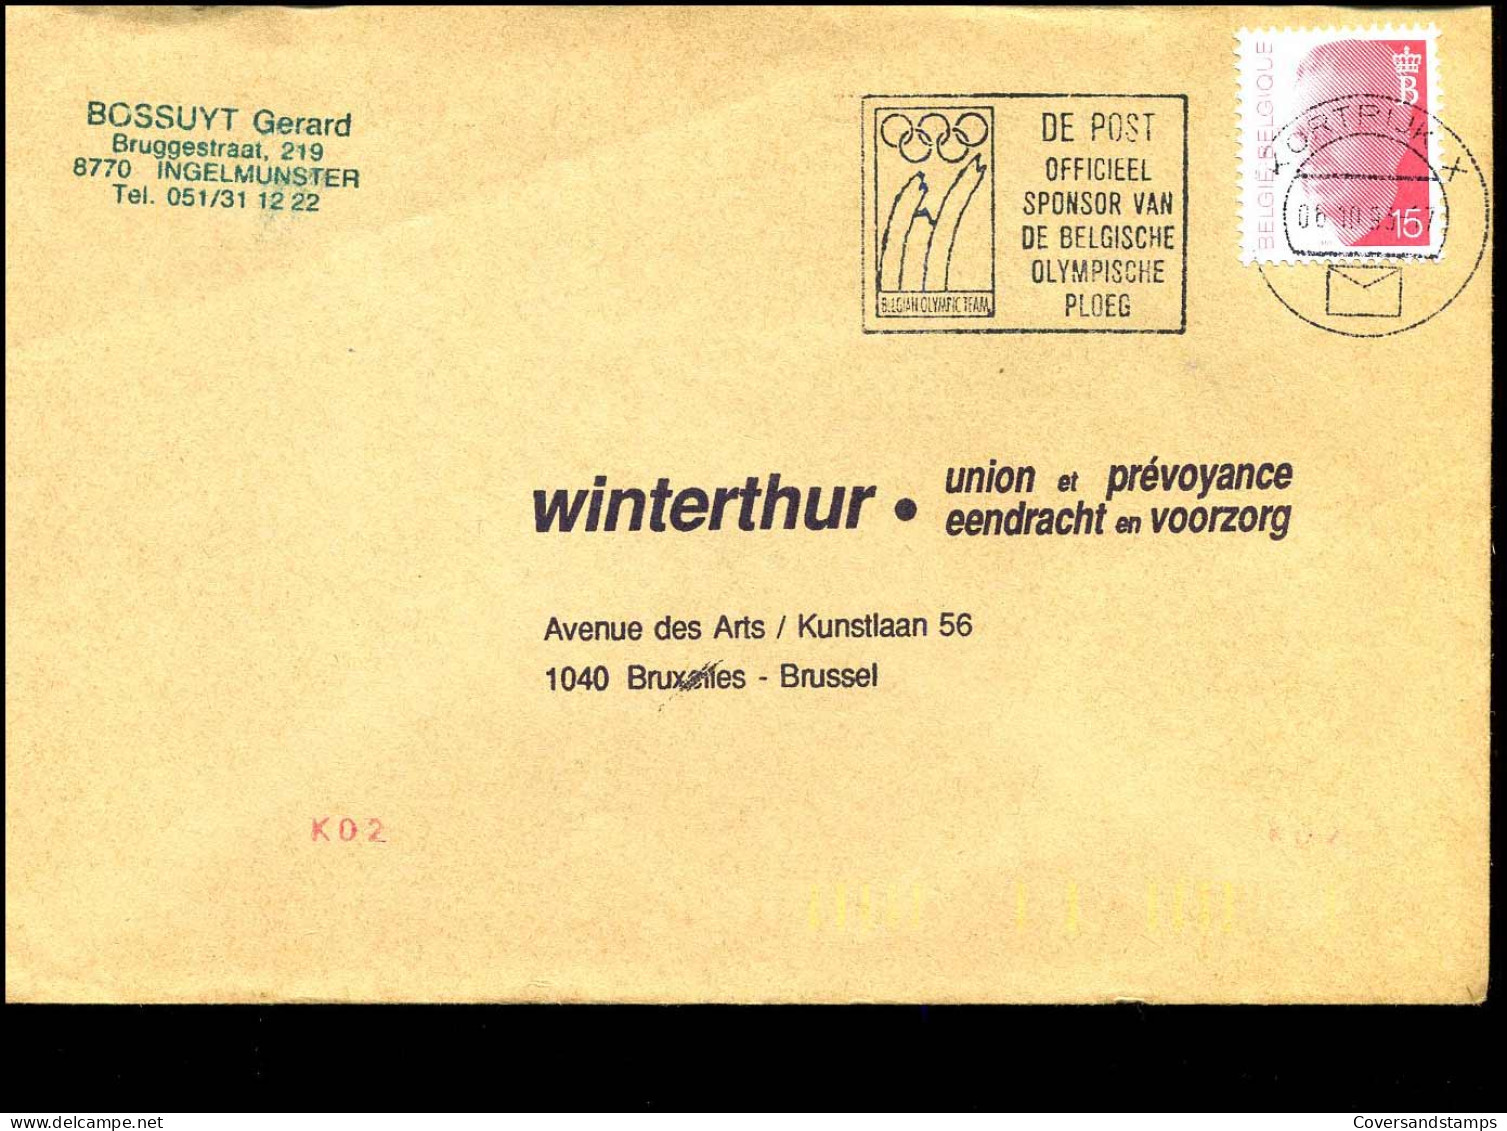 Cover Van Kortrijk Naar Brussel - "Winterthur" - Briefe U. Dokumente